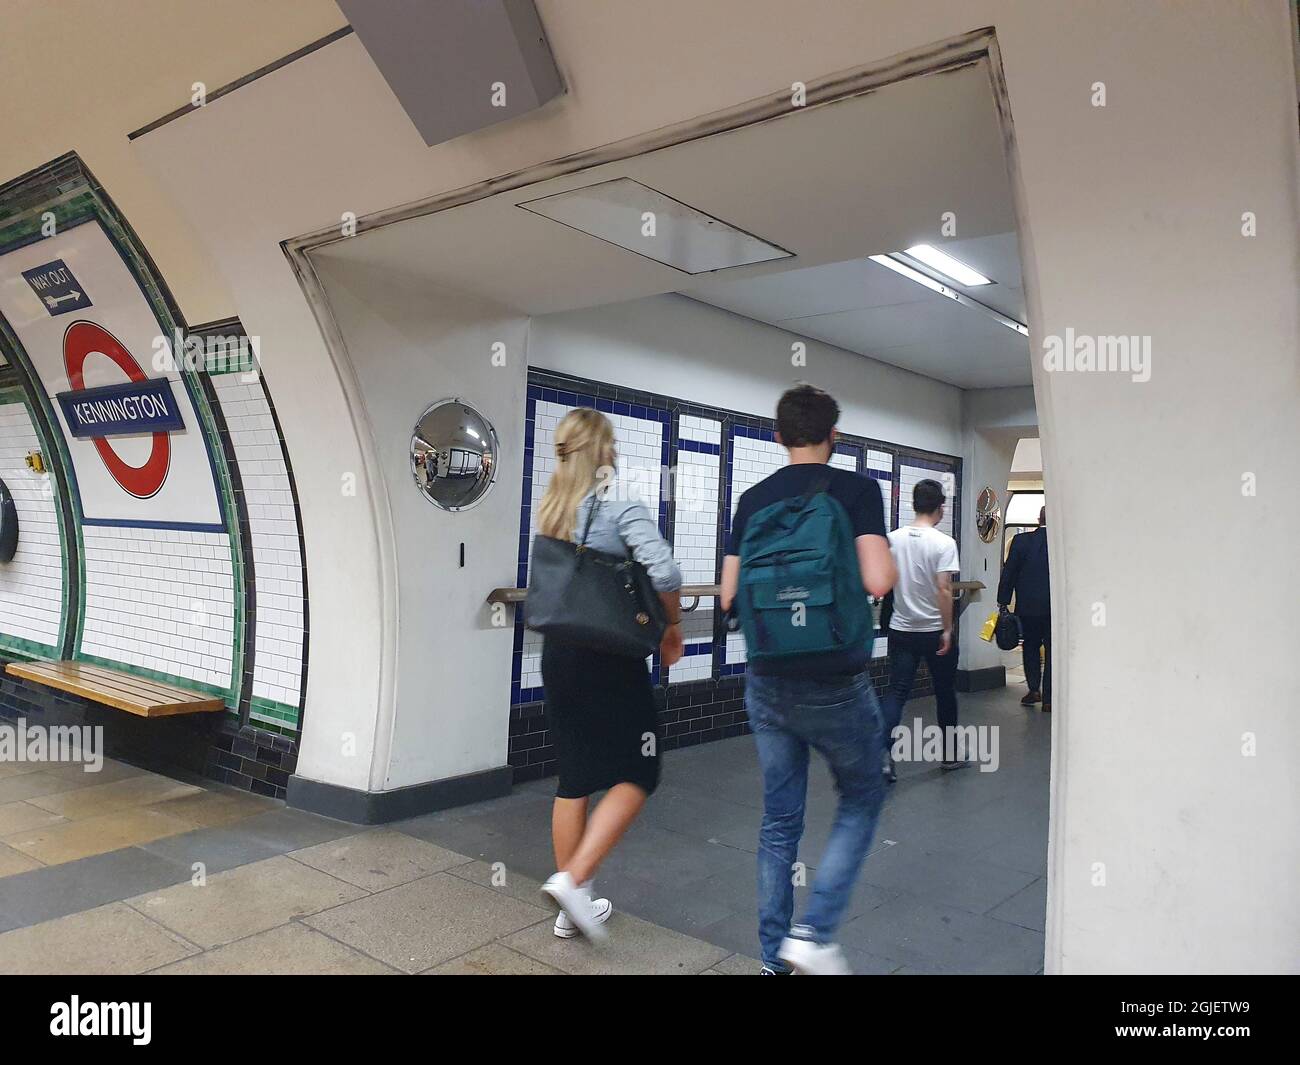 Londres, Reino Unido, 9 de septiembre de 2021: La estación Kennington tiene nuevos túneles multiplataforma más amplios que se han abierto a tiempo para un aumento previsto de pasajeros cuando la recién construida Extensión de la Línea Norther se abre el 20 de septiembre, conectando Kennington a la Estación de Energía de Nine Elms y Battersea. Anna Watson/Alamy Live News Foto de stock